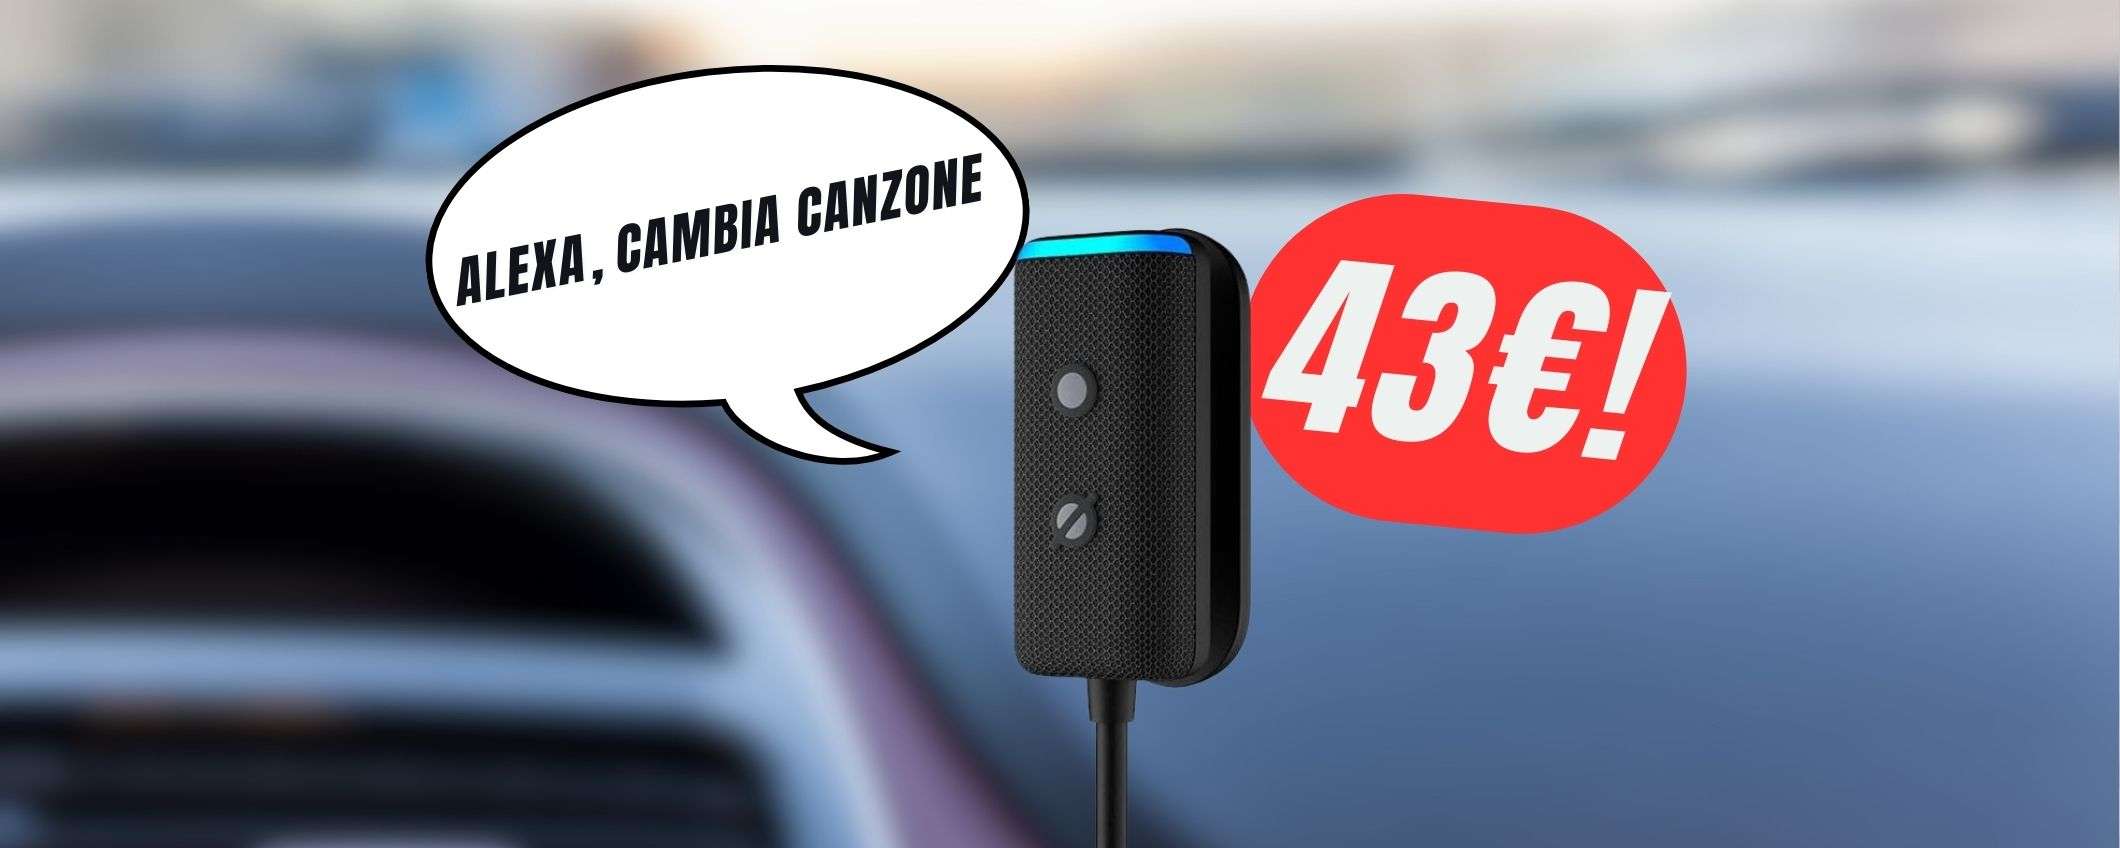 Per avere Alexa in auto bastano solo 39€ grazie allo sconto del 43%!